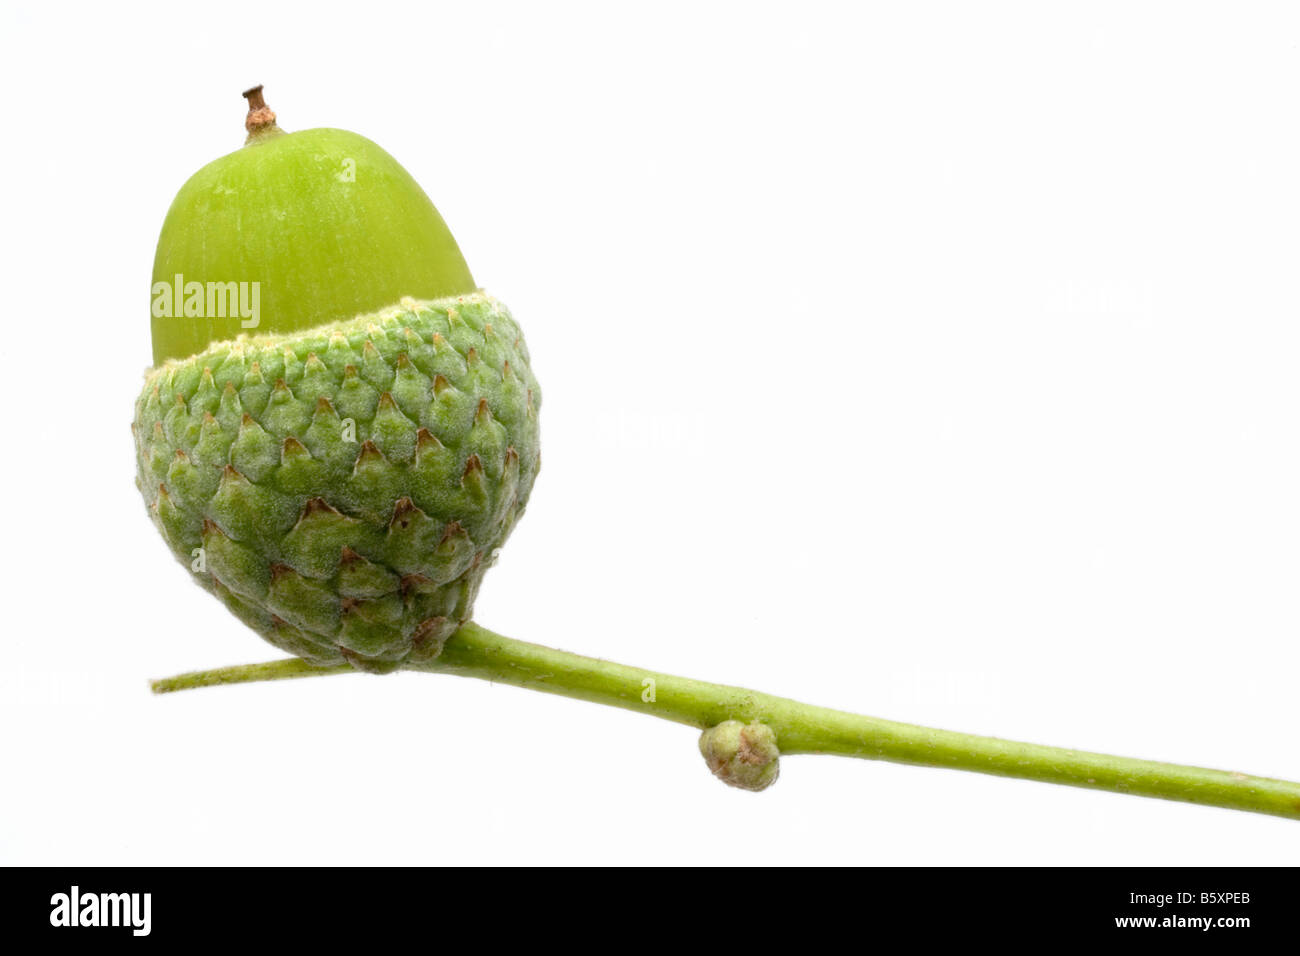 Un tallo verde posee un 'acorn cup', en el que hay una bellota, verde (la semilla de un árbol de roble). Fondo blanco. Foto de stock